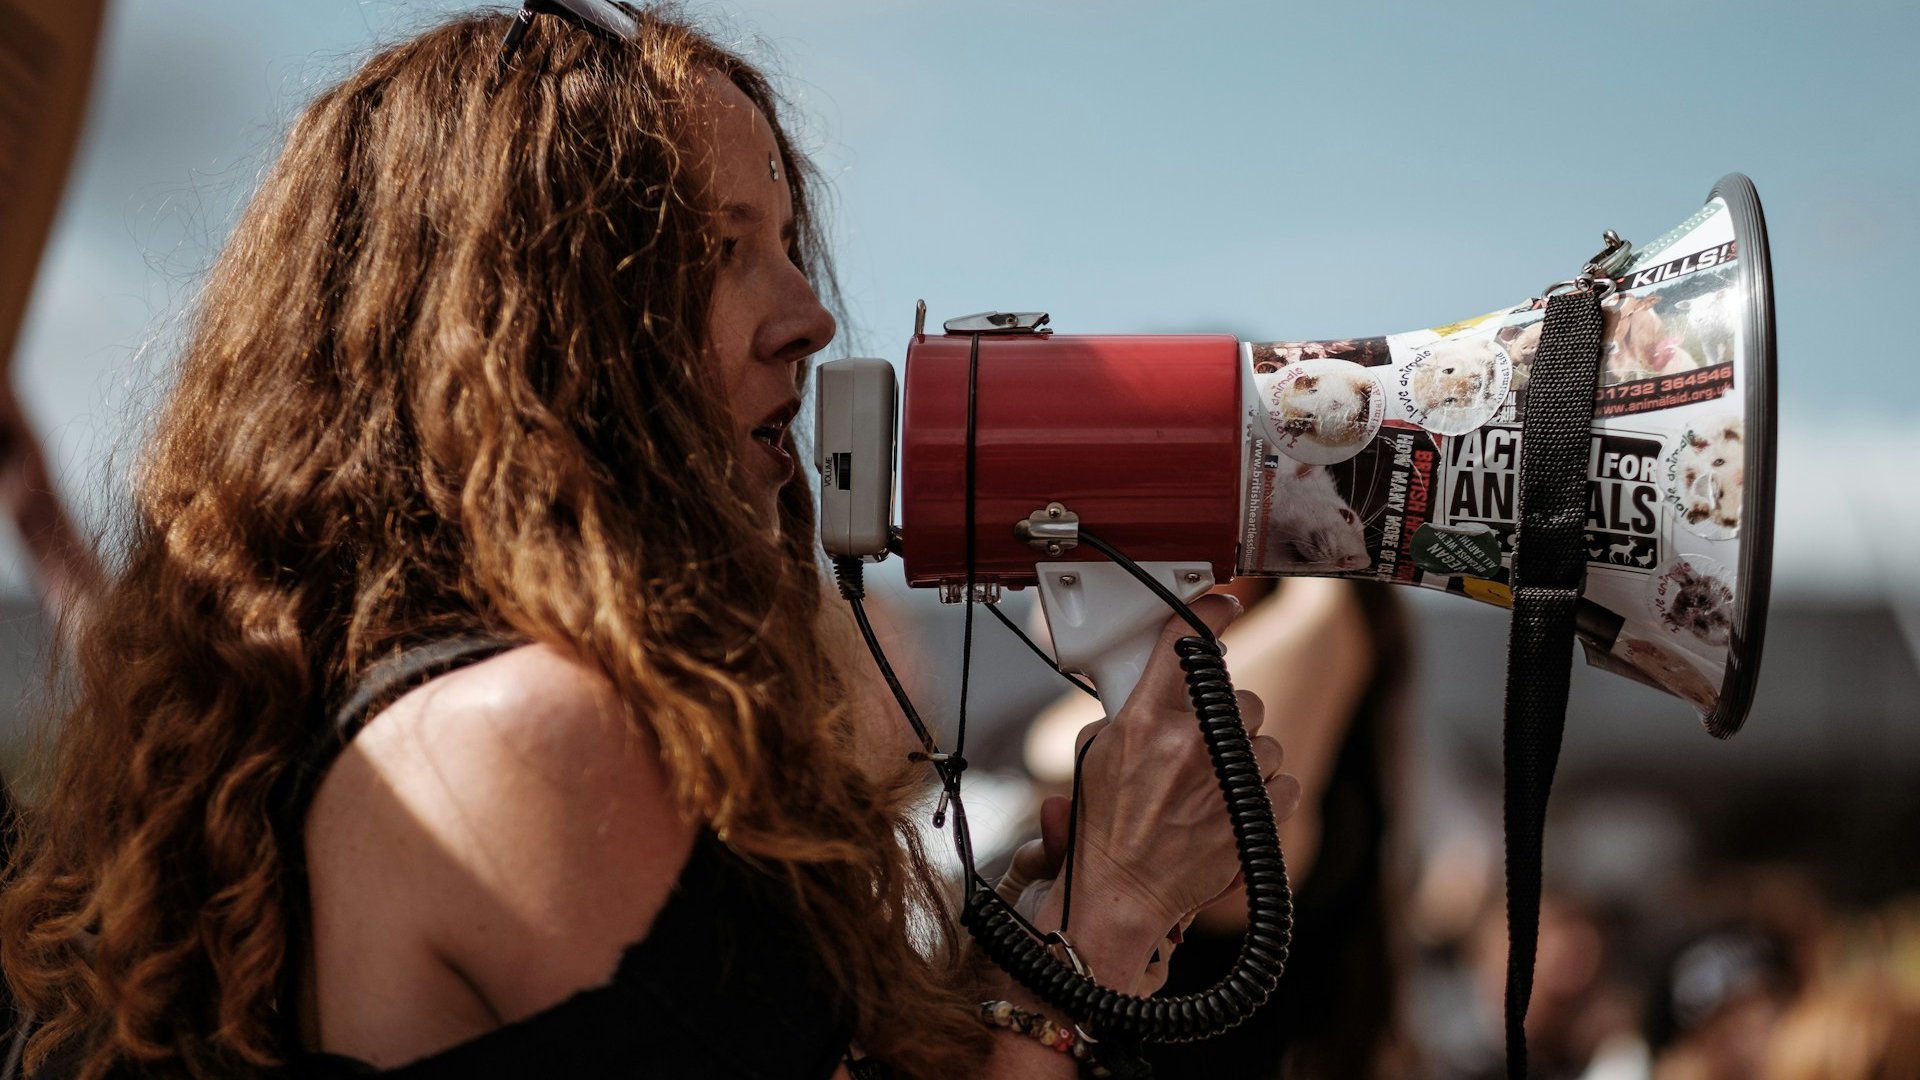 Mulher falando em um megafone, durante um protesto.